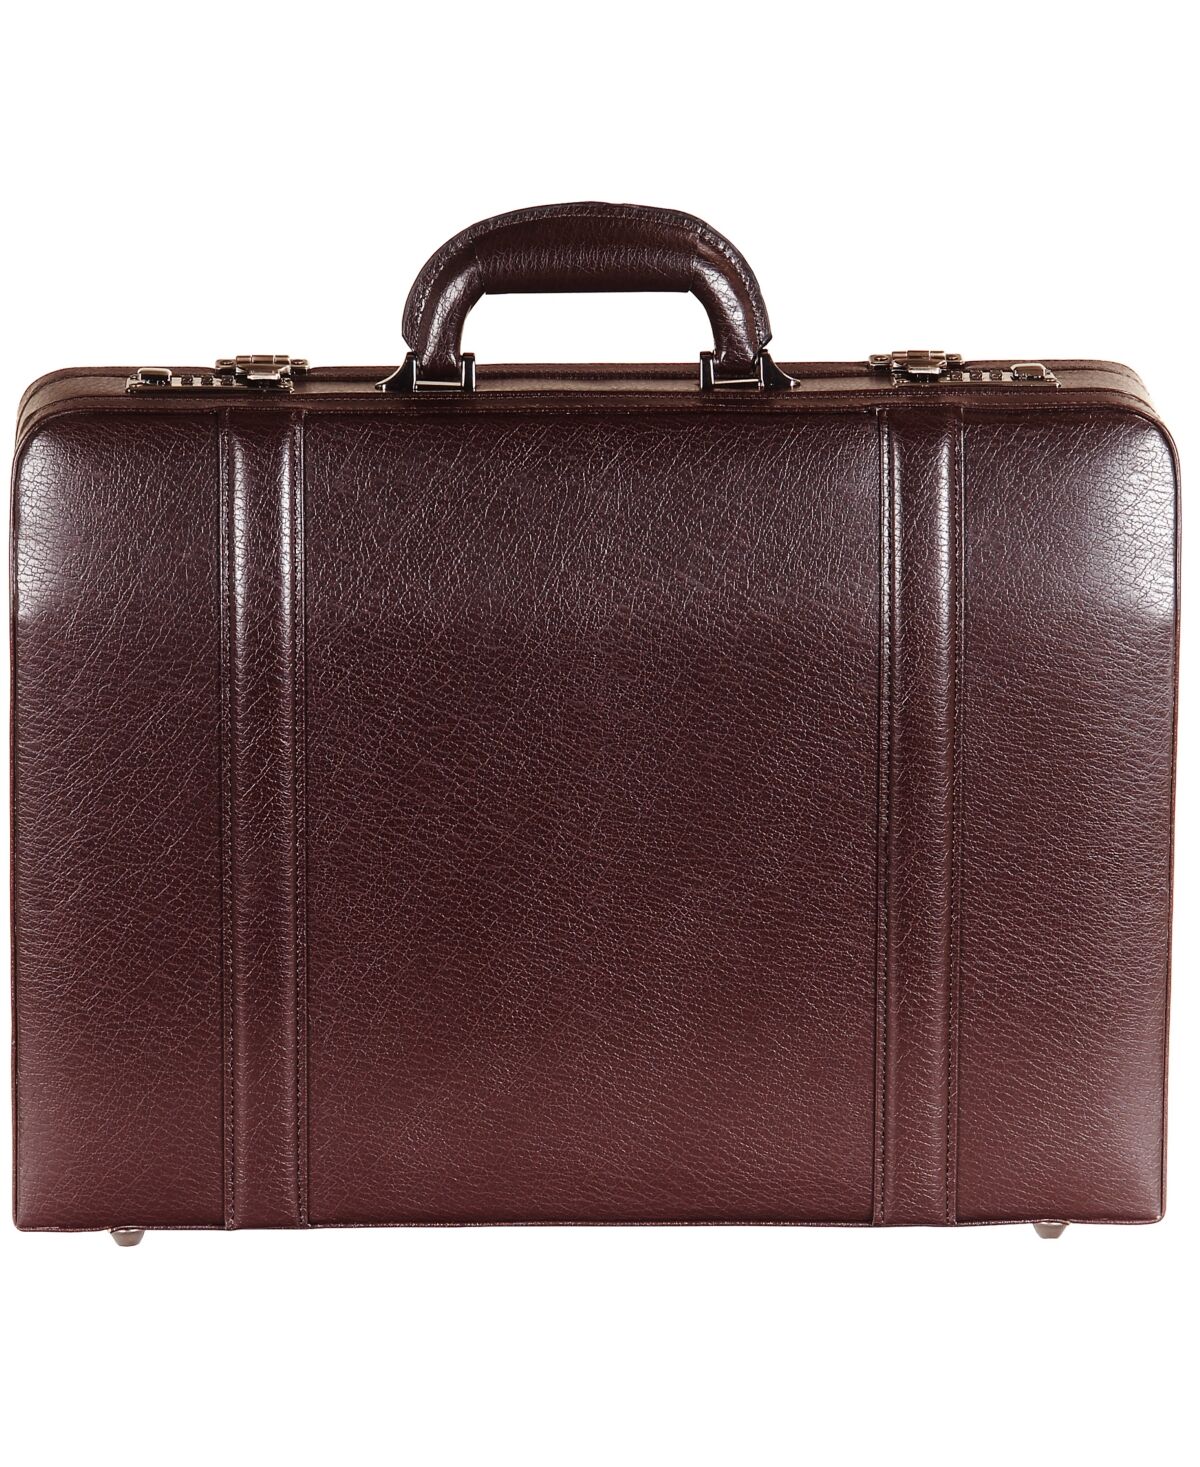 Mancini Men's Business Collection Expandable Attache Case Bag - Burgundy